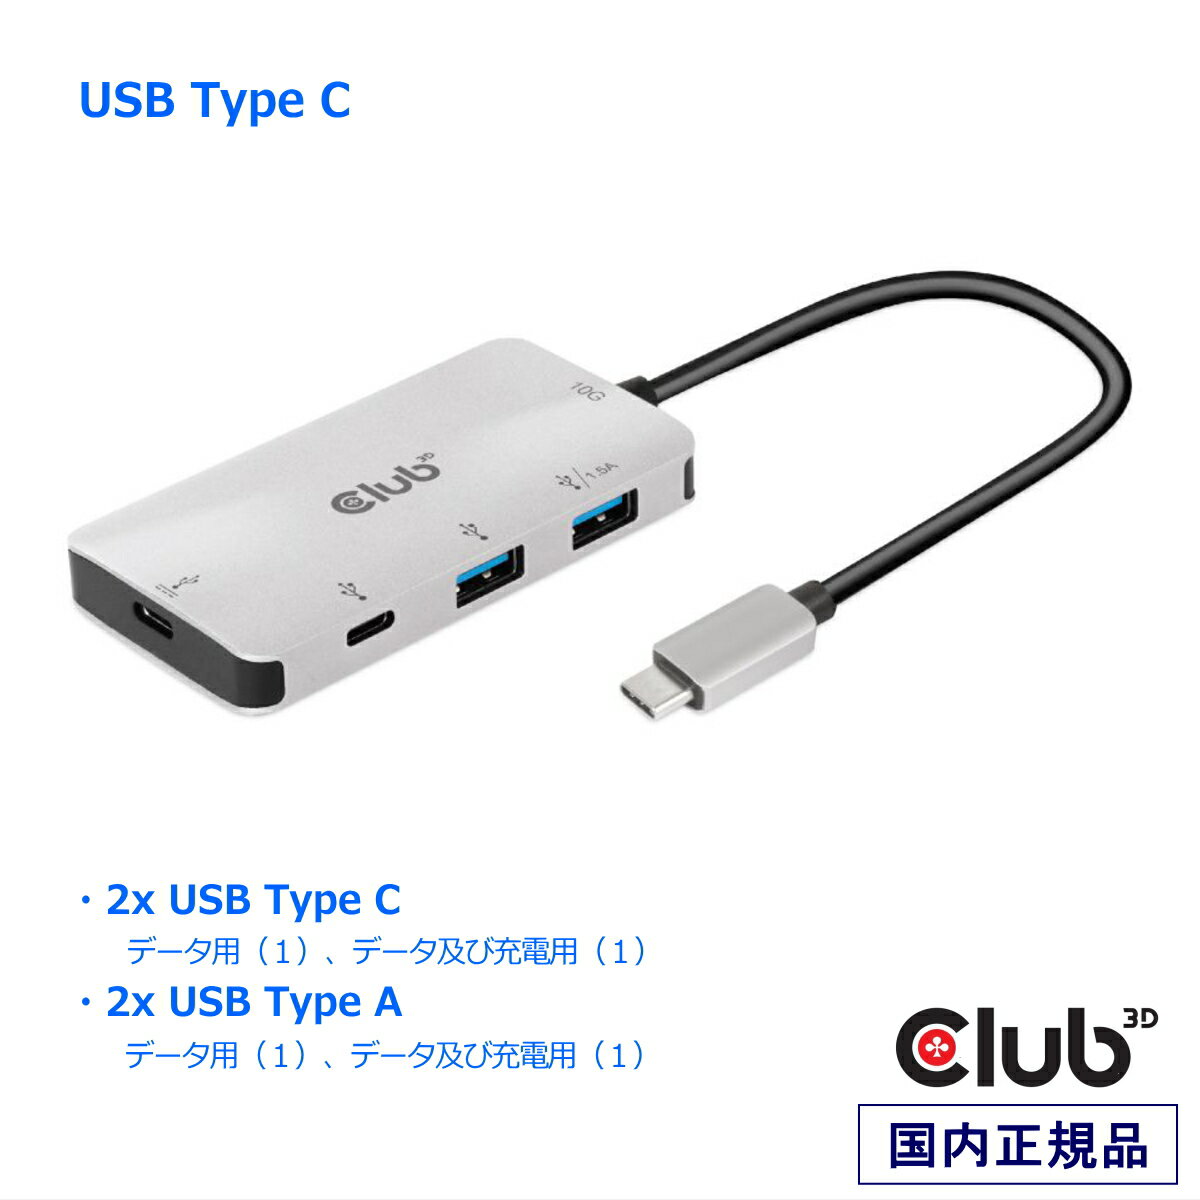 国内正規品 Club 3D USB Type-C ドッキングステーション PD 3.0 対応 ハブ 2x Type-C 10G ポート 2x USB Type-A 10G ポート (CSV-1543)